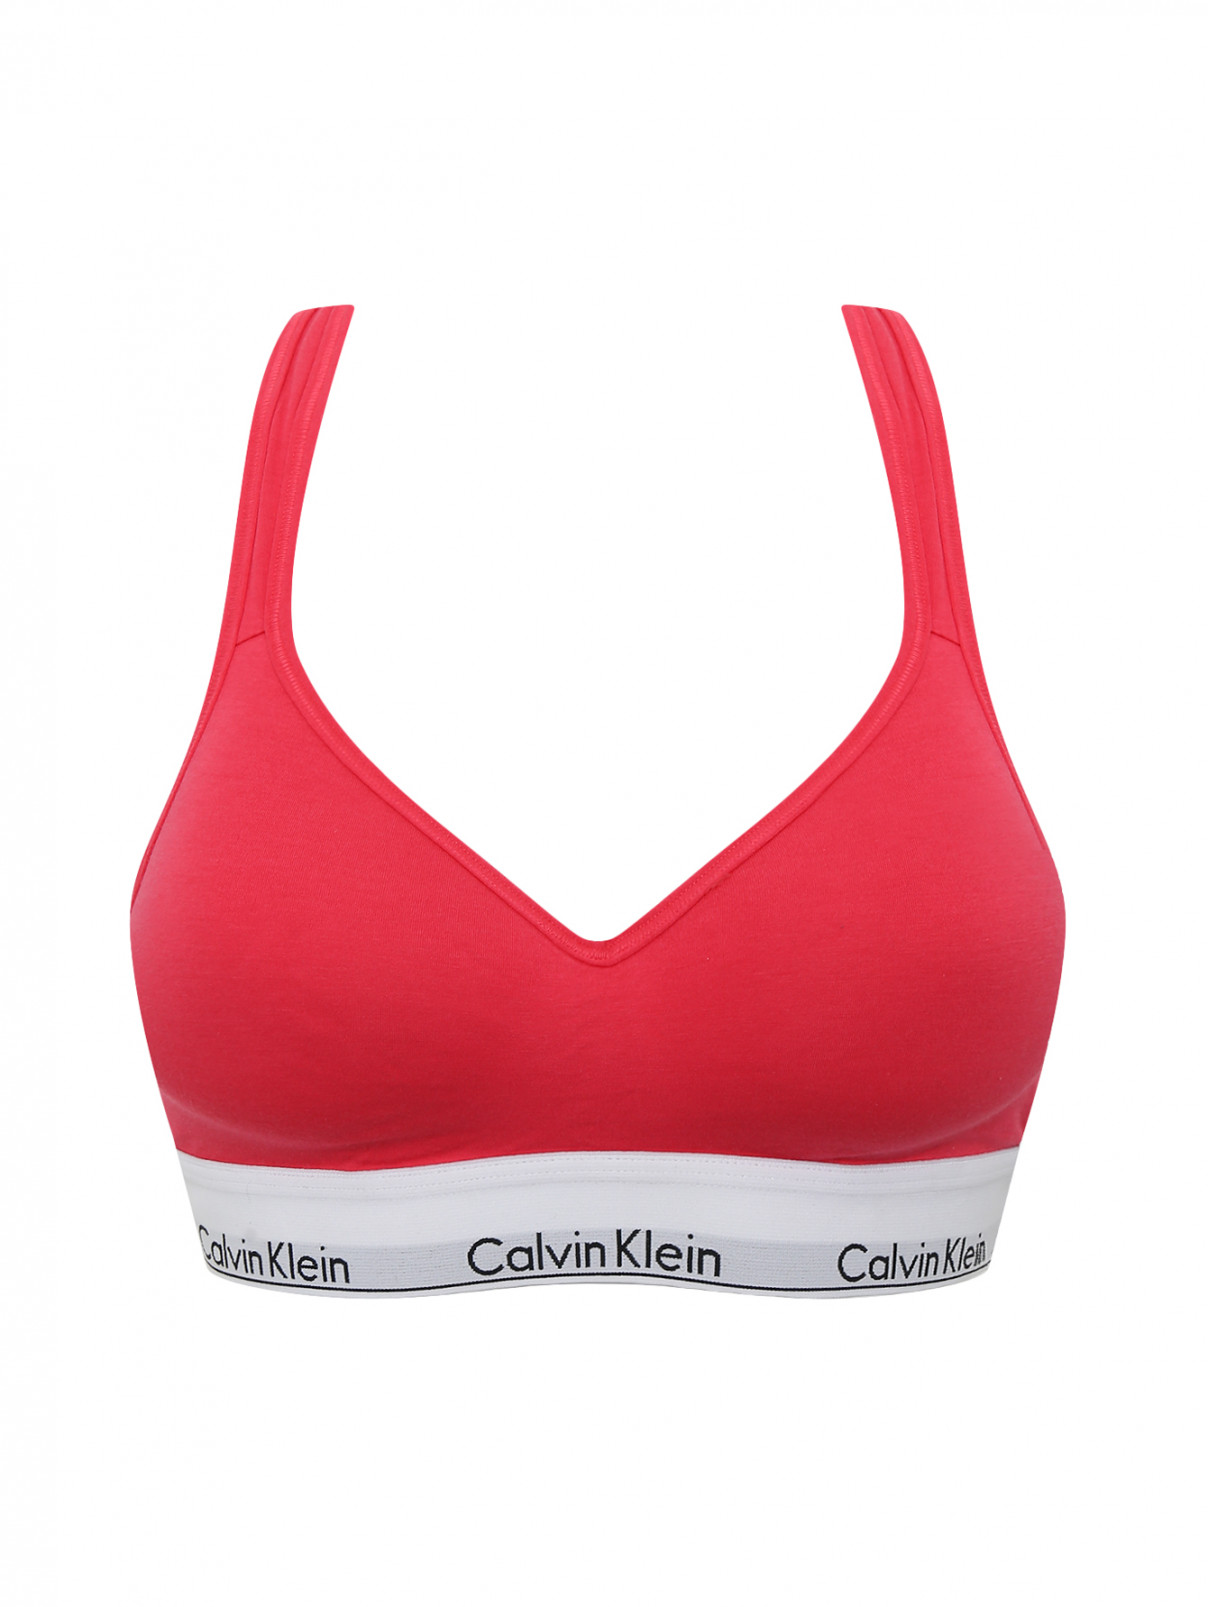 Спортивный бюстгальтер с контрастной резинкой Calvin Klein  –  Общий вид  – Цвет:  Розовый